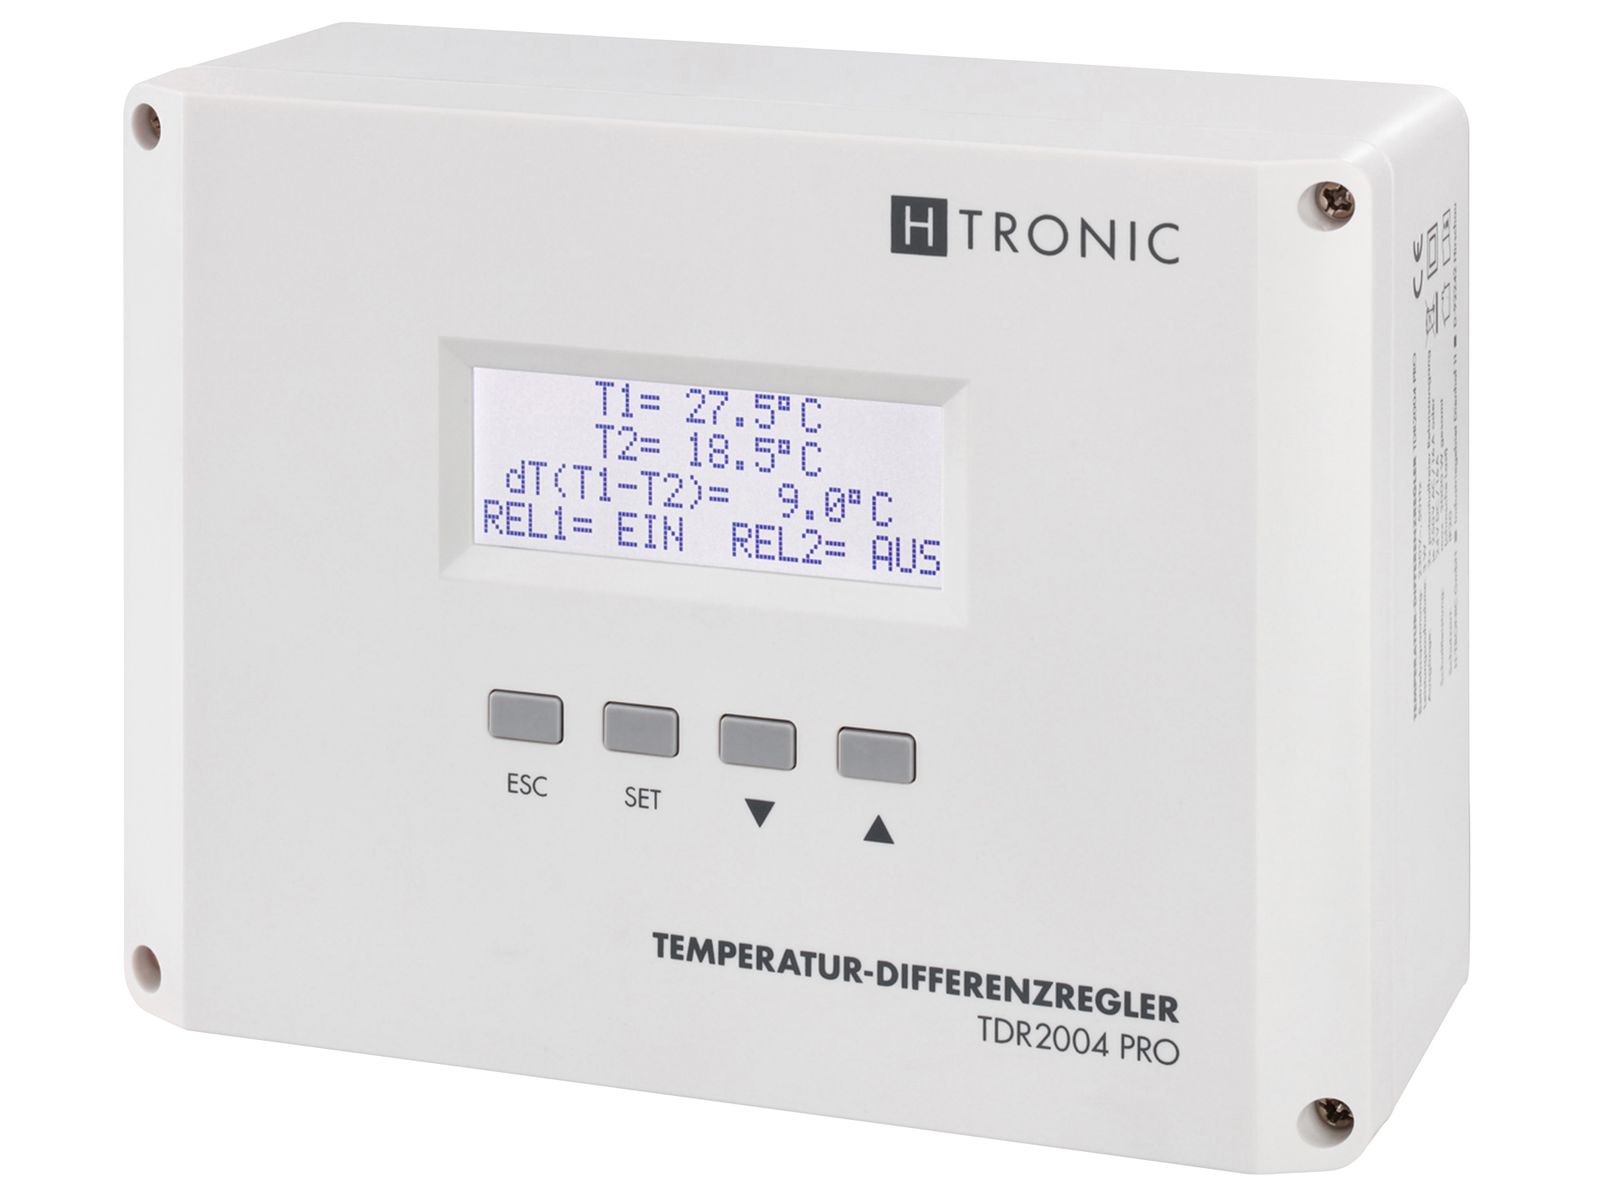 H-TRONIC Temperatur-Differenzregler TDR2004 pro, weiß von H-Tronic